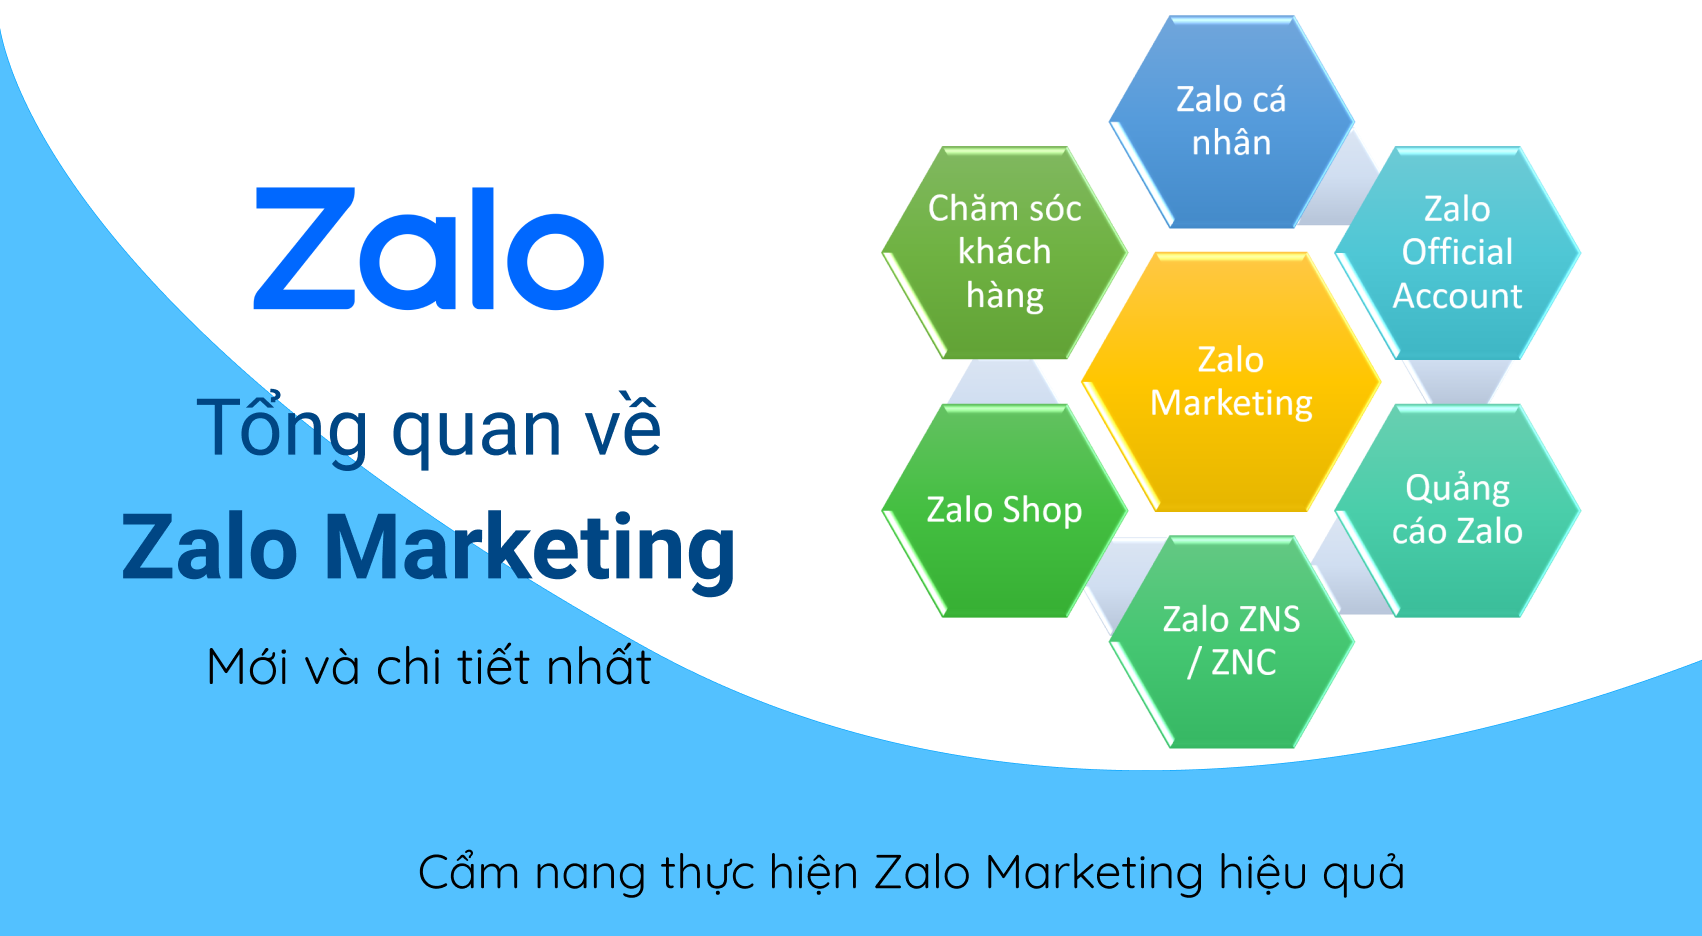 Zalo Marketing chi tiết nhất: bán hàng hiệu quả không mất phí